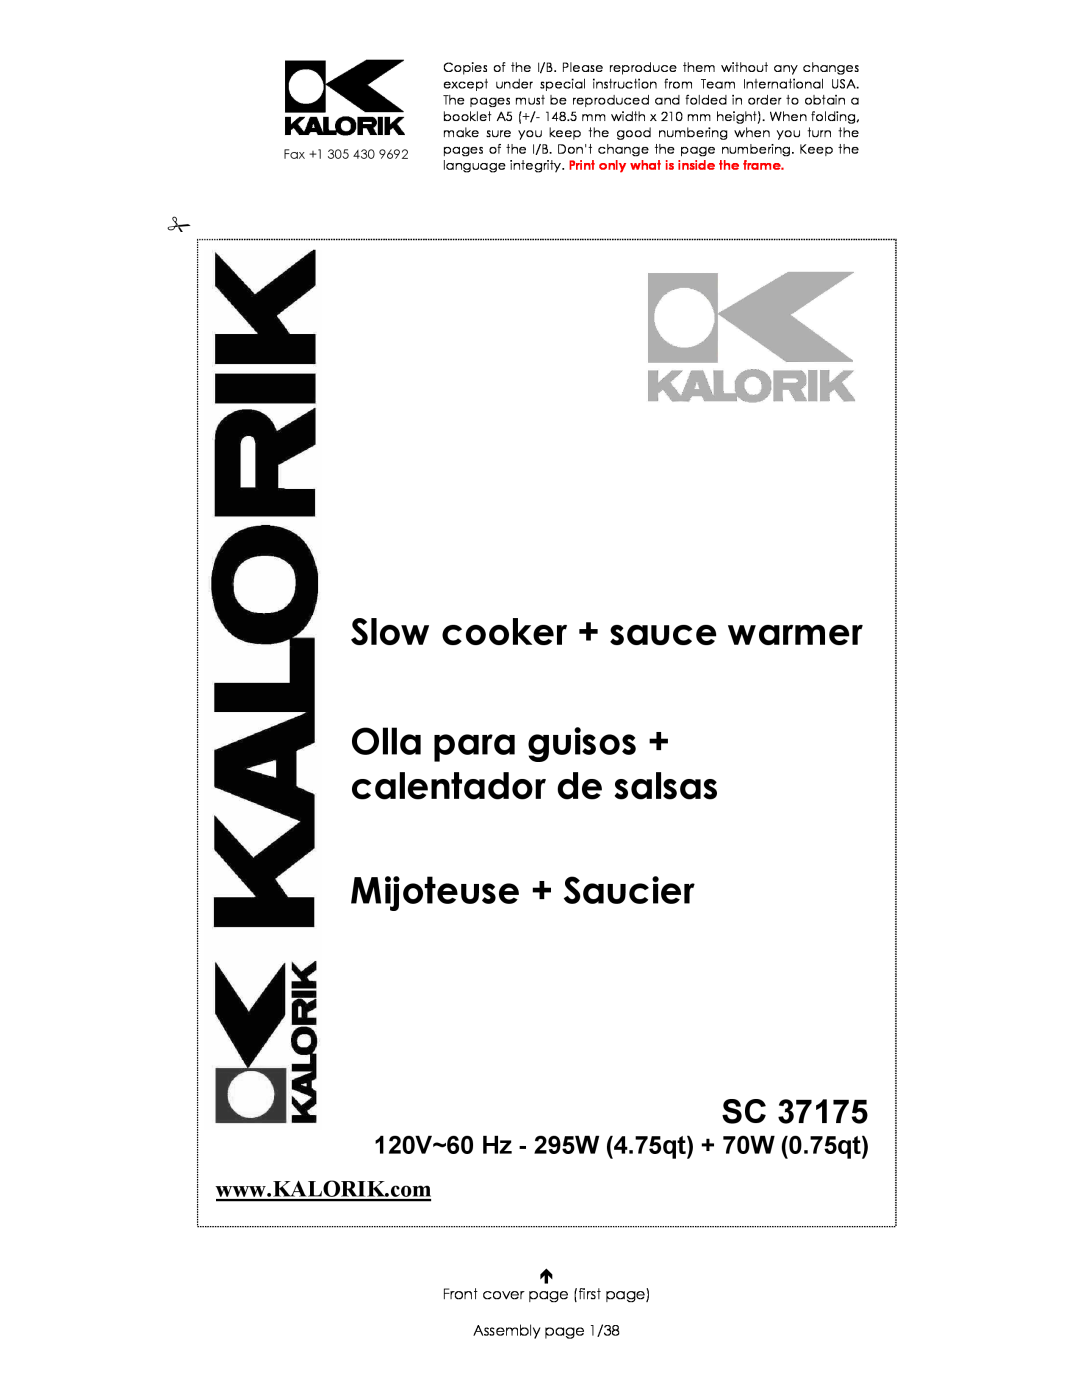 Kalorik SC 37175 manual Slow cooker + sauce warmer, Olla para guisos + calentador de salsas, Mijoteuse + Saucier 